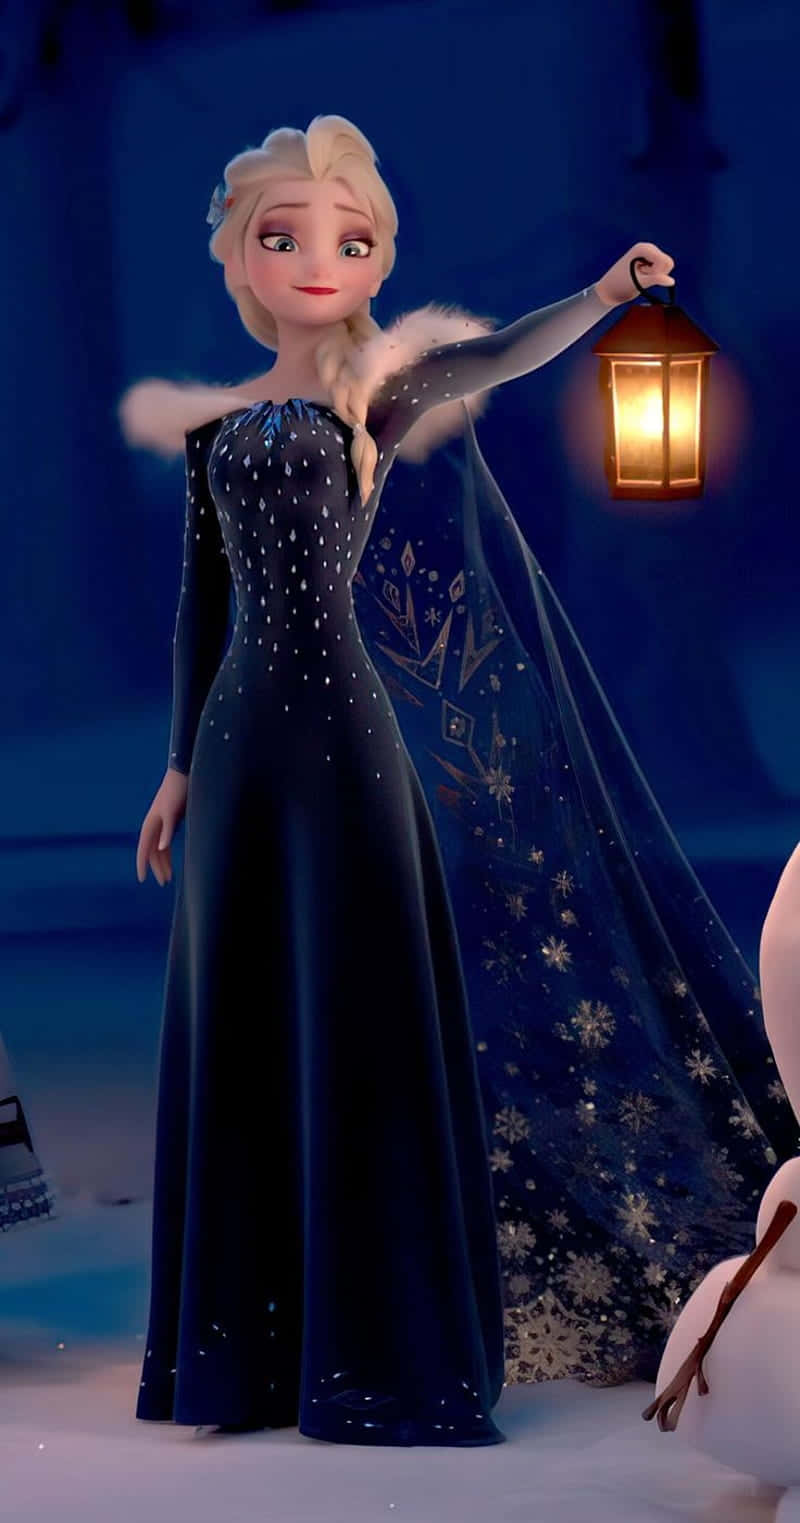 Imágenesde Elsa De Frozen Vistiendo Un Vestido.